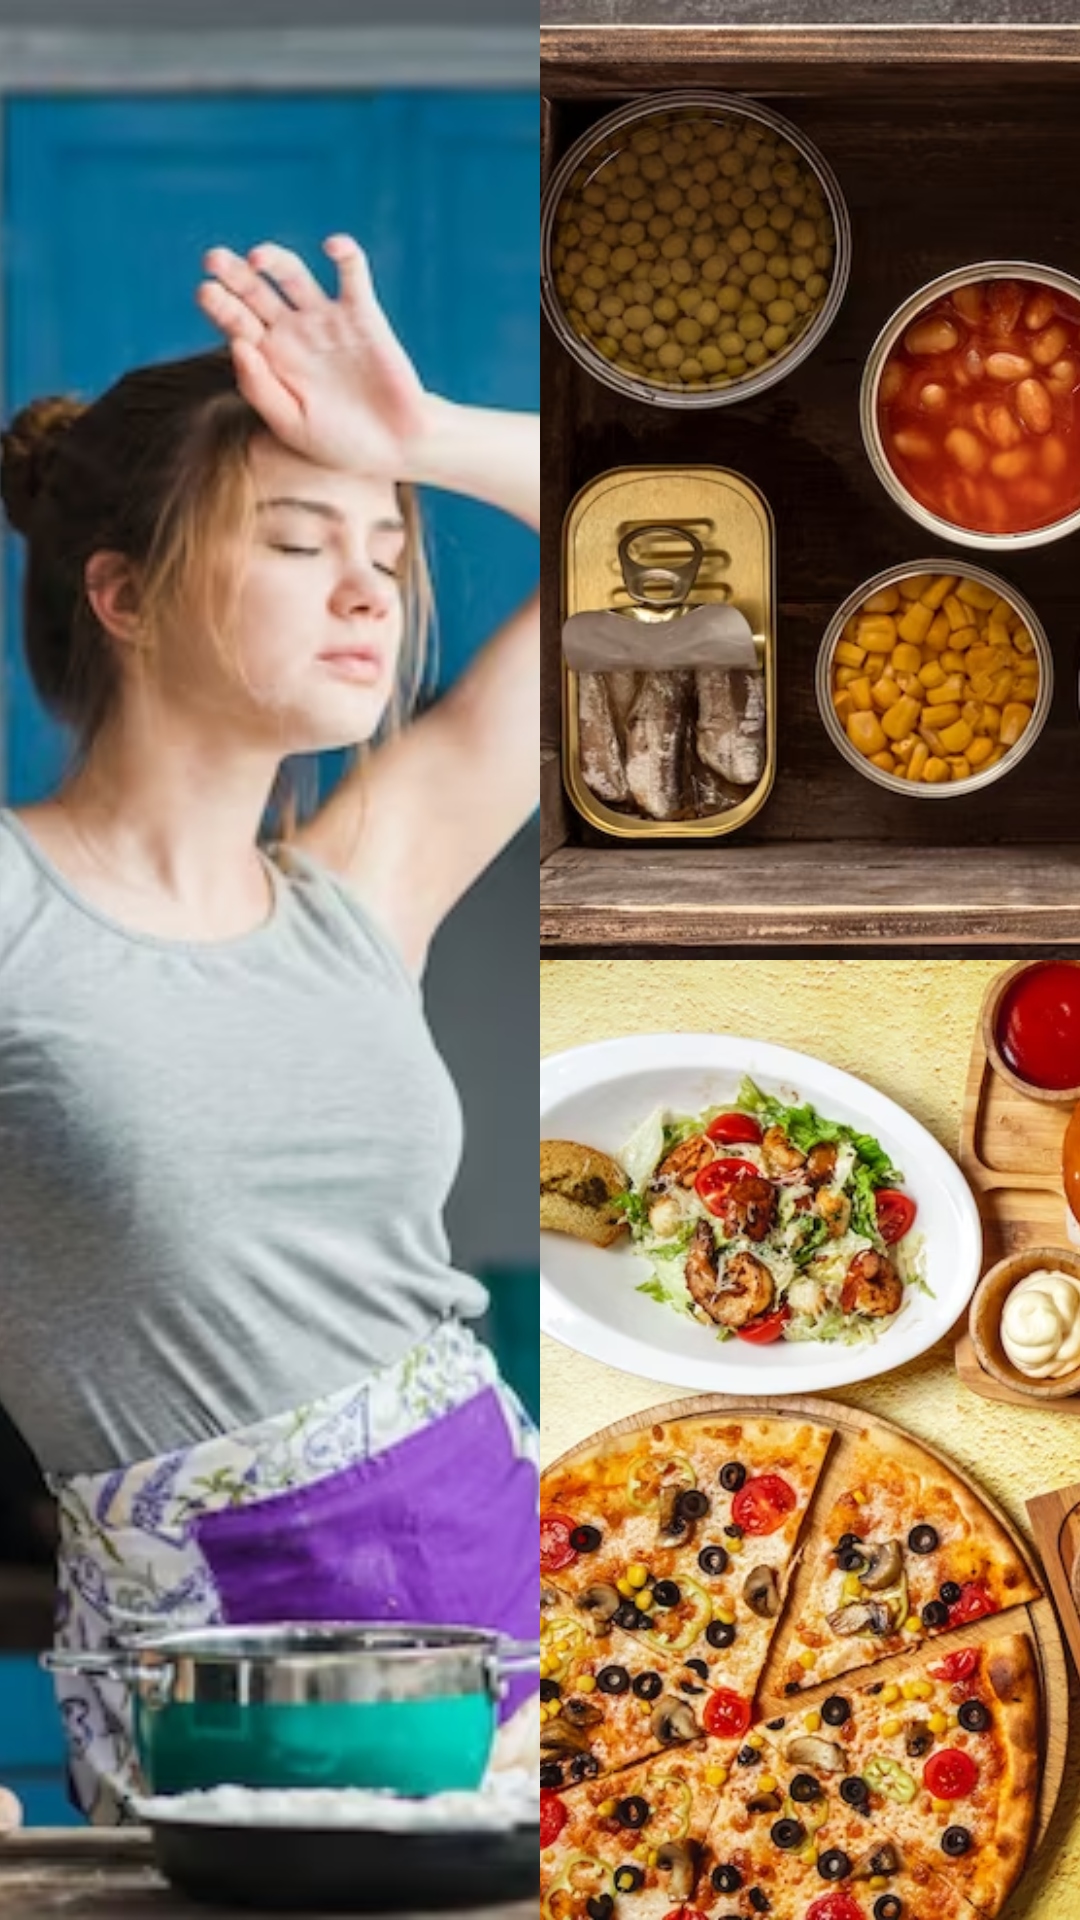 10 Diet habits that weaken your immune system